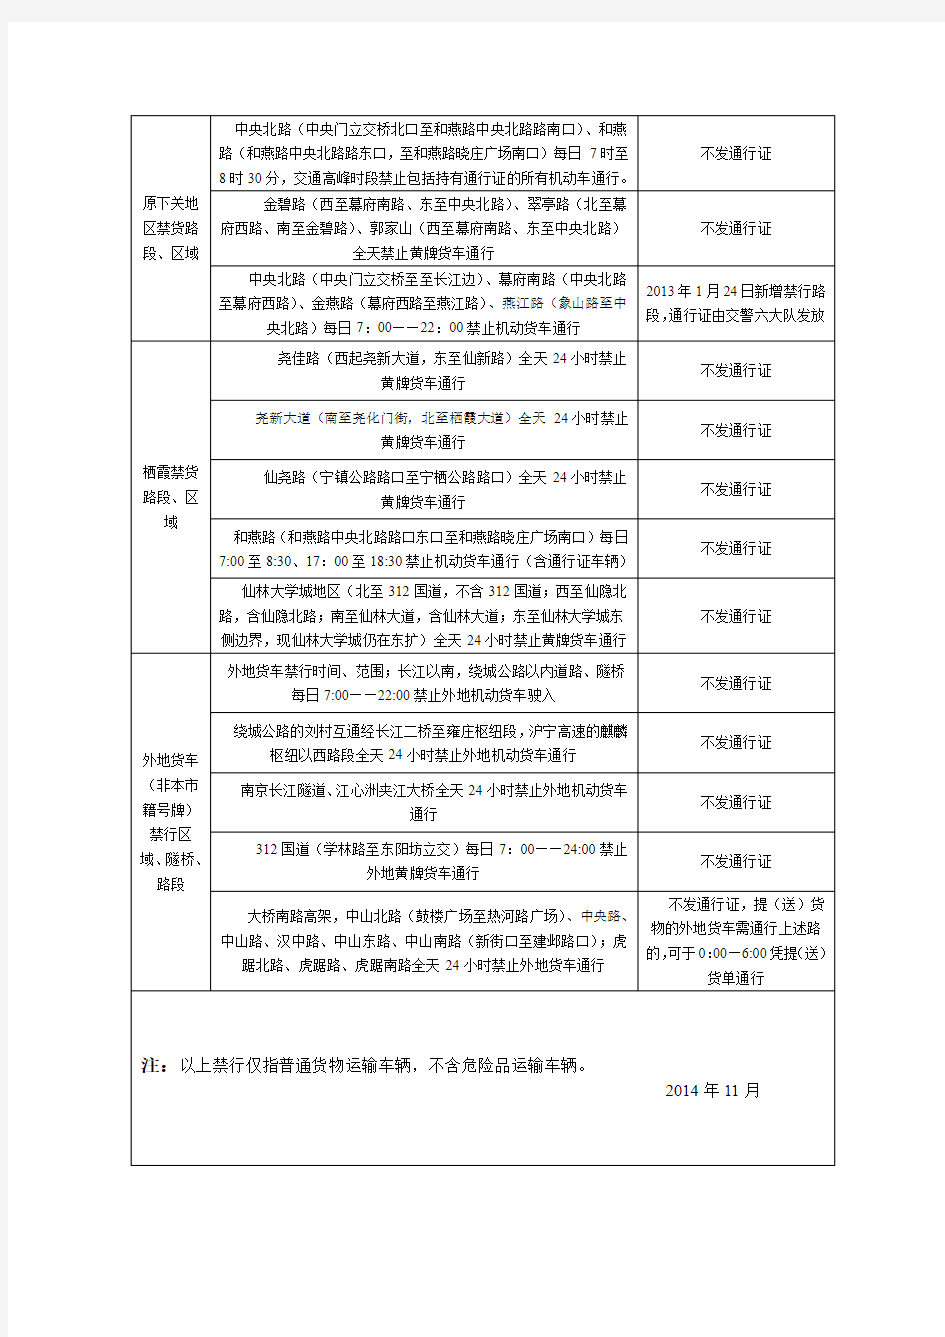 南京市禁区通行一览表